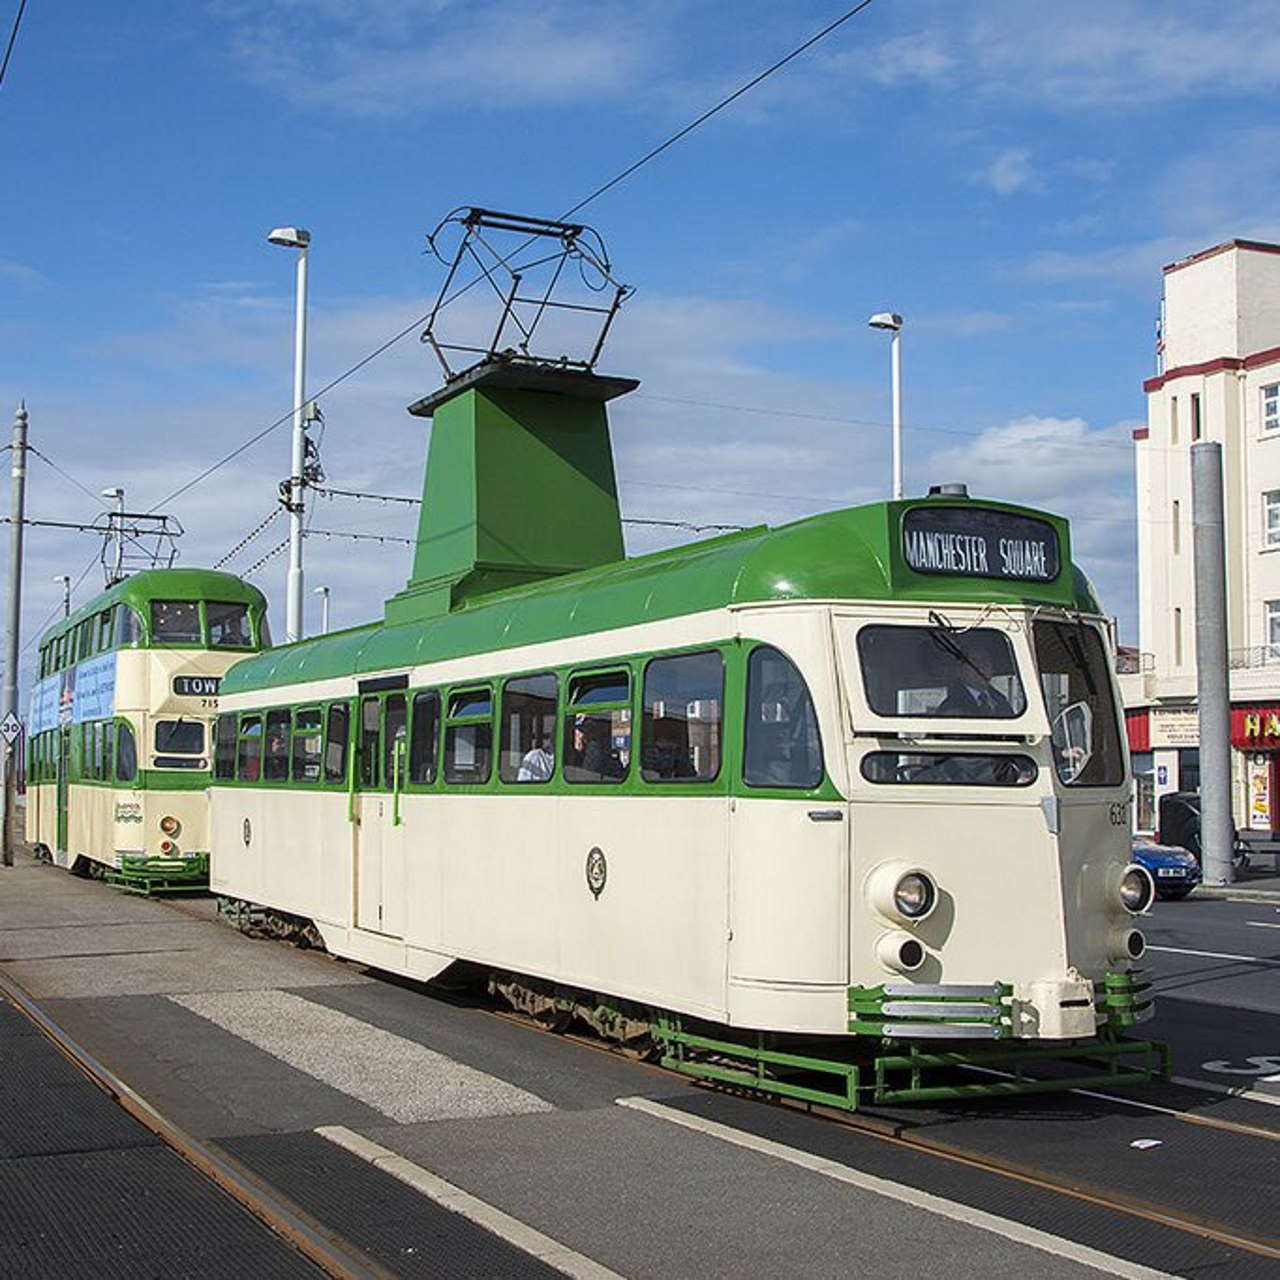 Blackpool Heritage Trams set to return in August